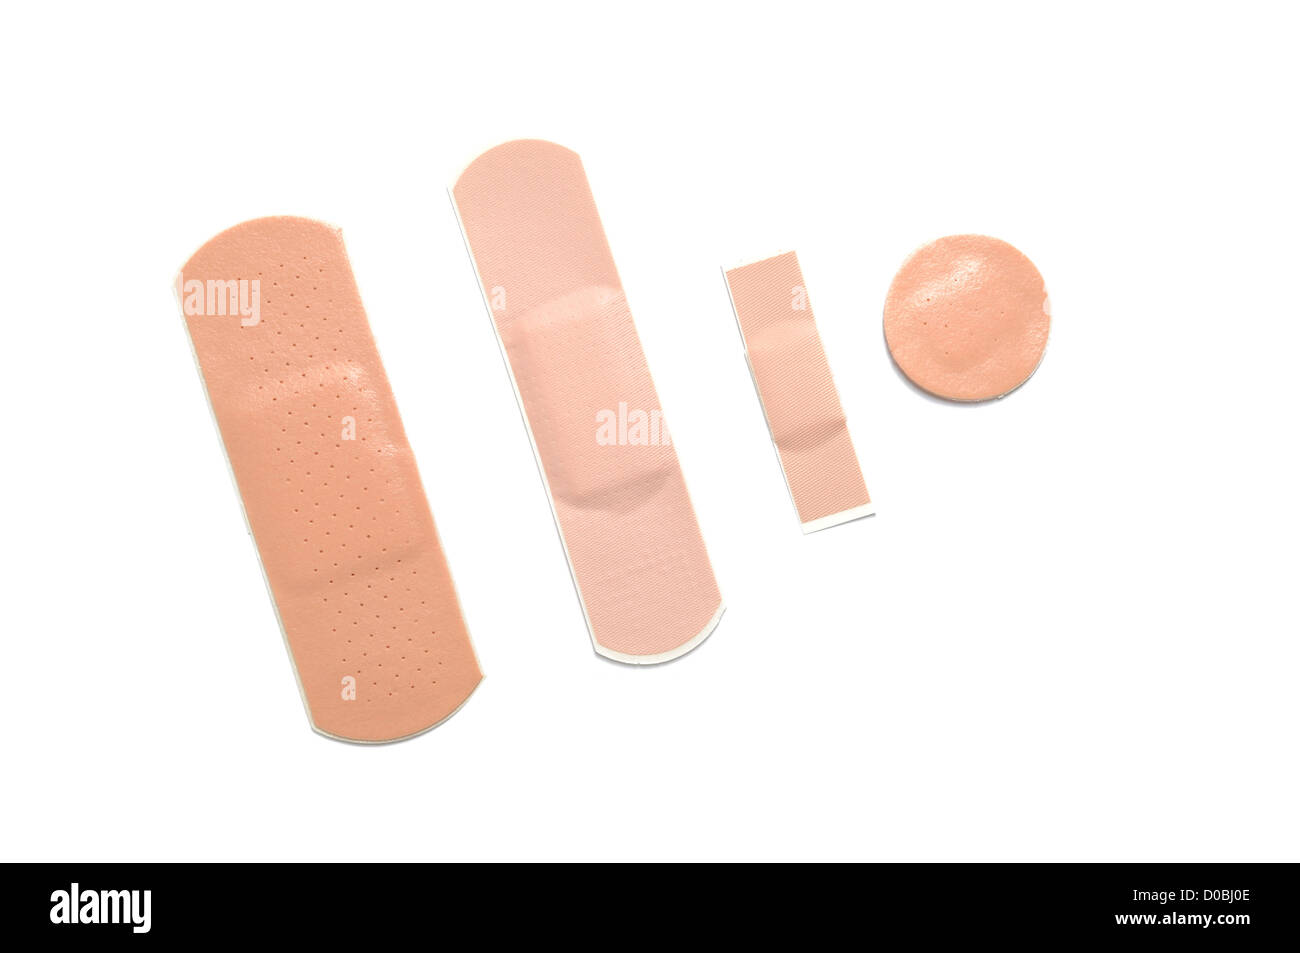 Different sizes of adhesive bandage Stock Photo